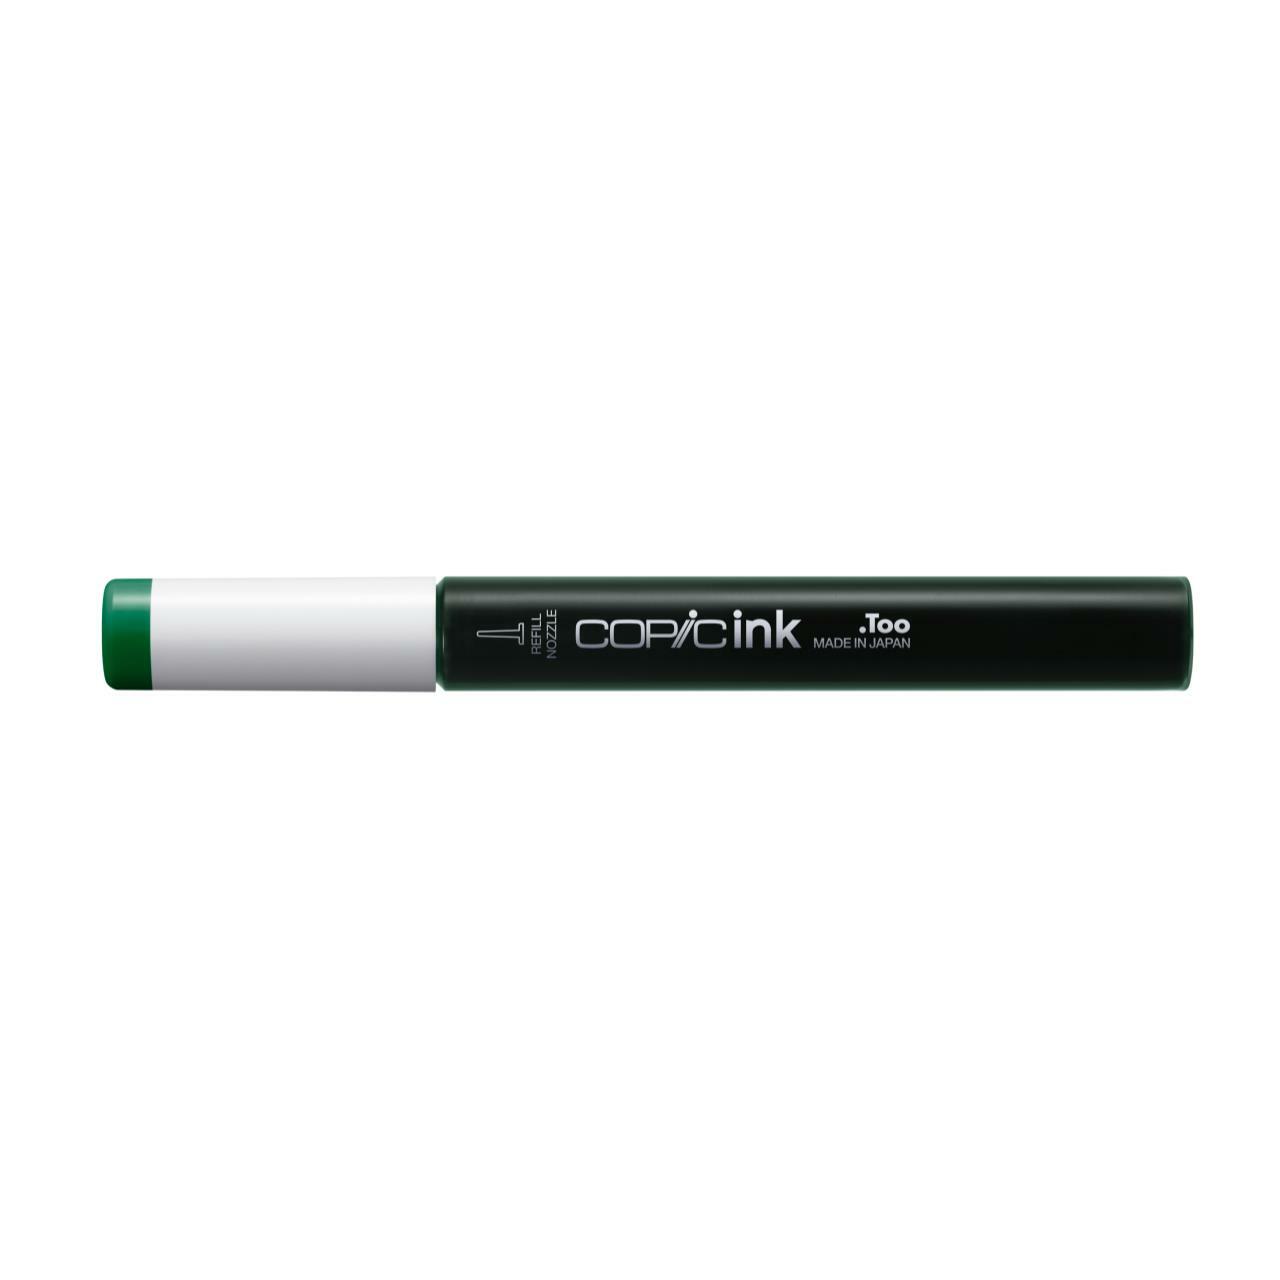 Заправка для маркеров COPIC 12 мл цв. G19 парижская зелень заправка для маркеров copic 12 мл цв yr01 персиковый крем